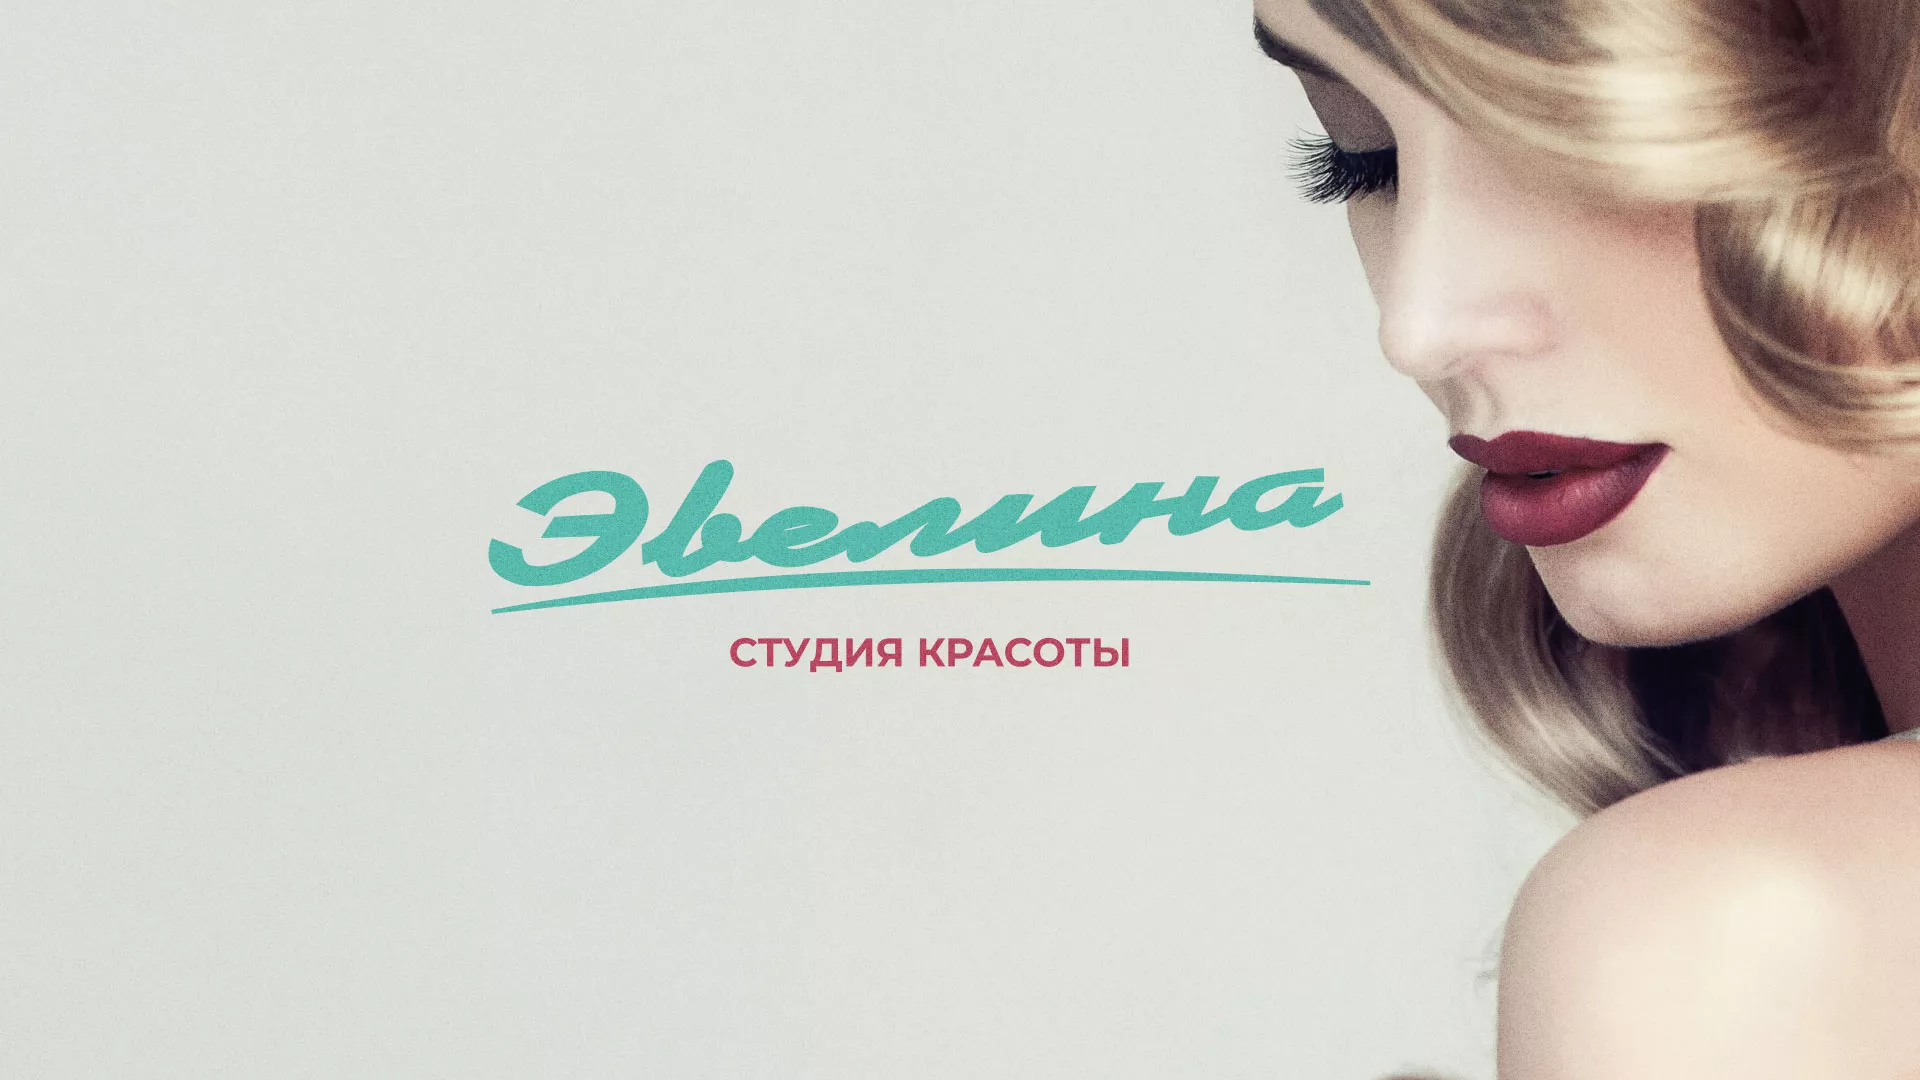 Разработка сайта для салона красоты «Эвелина» в Славянске-на-Кубани